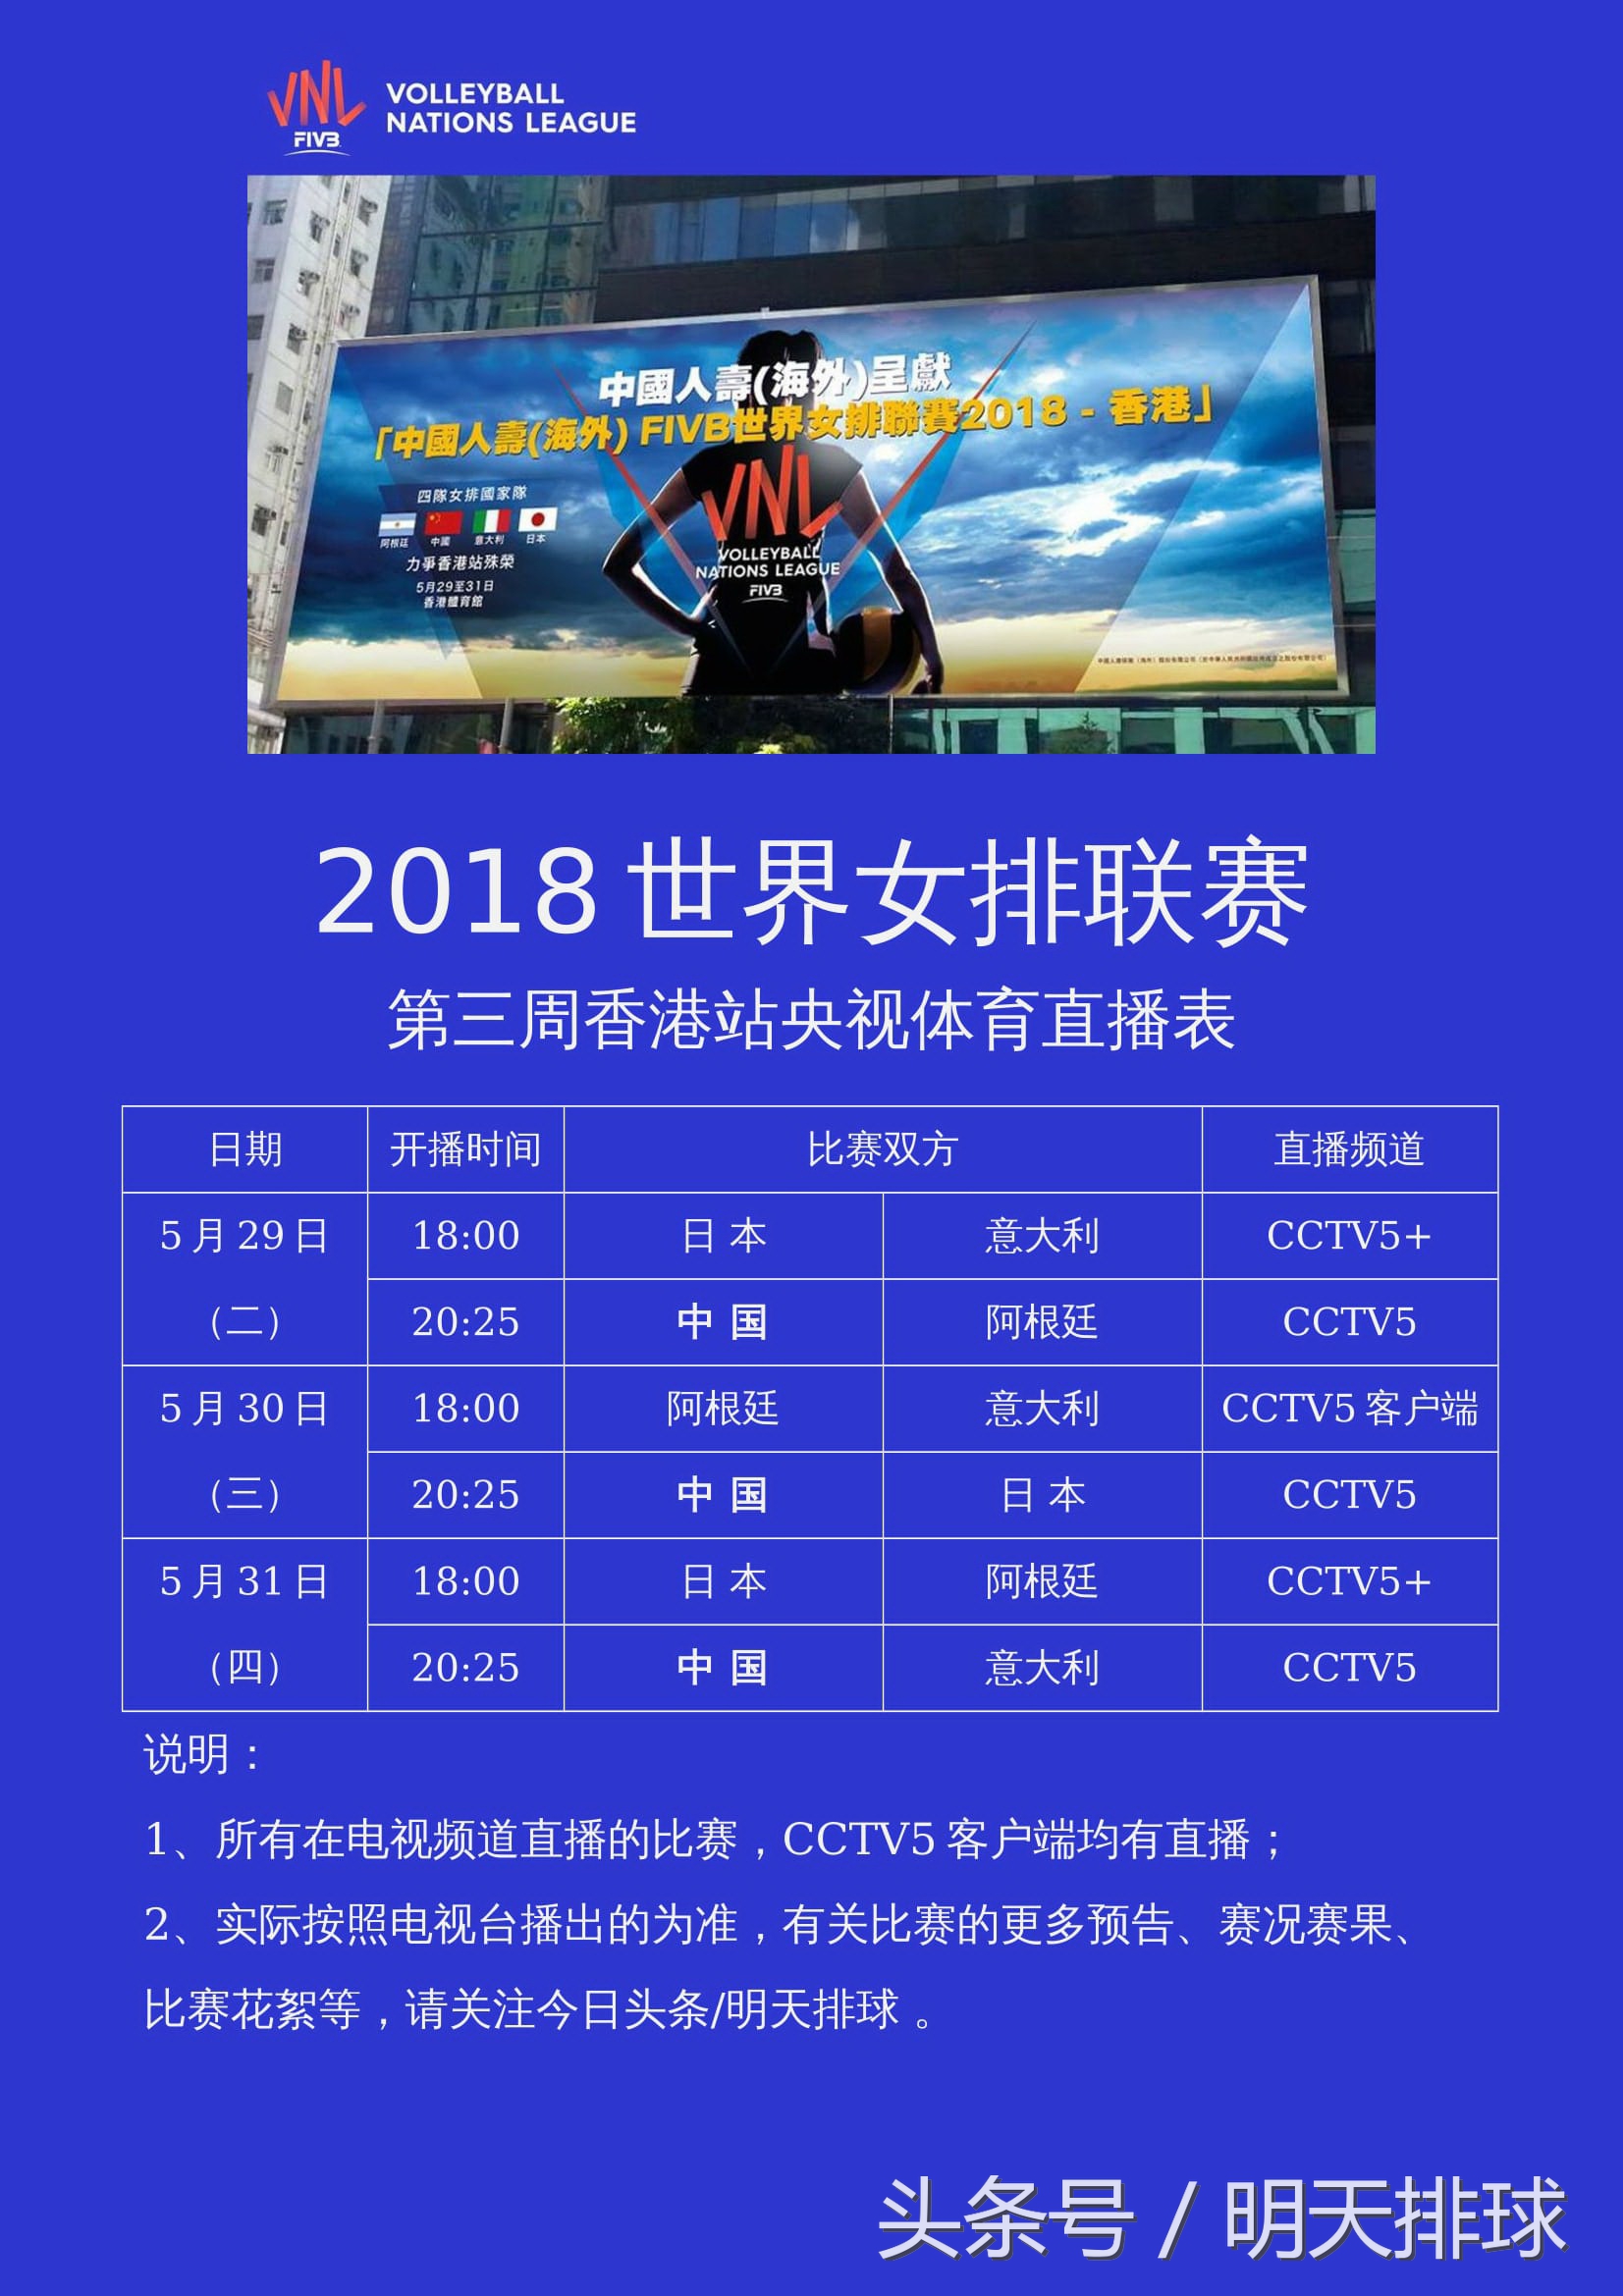 CCTV5全程直播中国女排香港站比赛